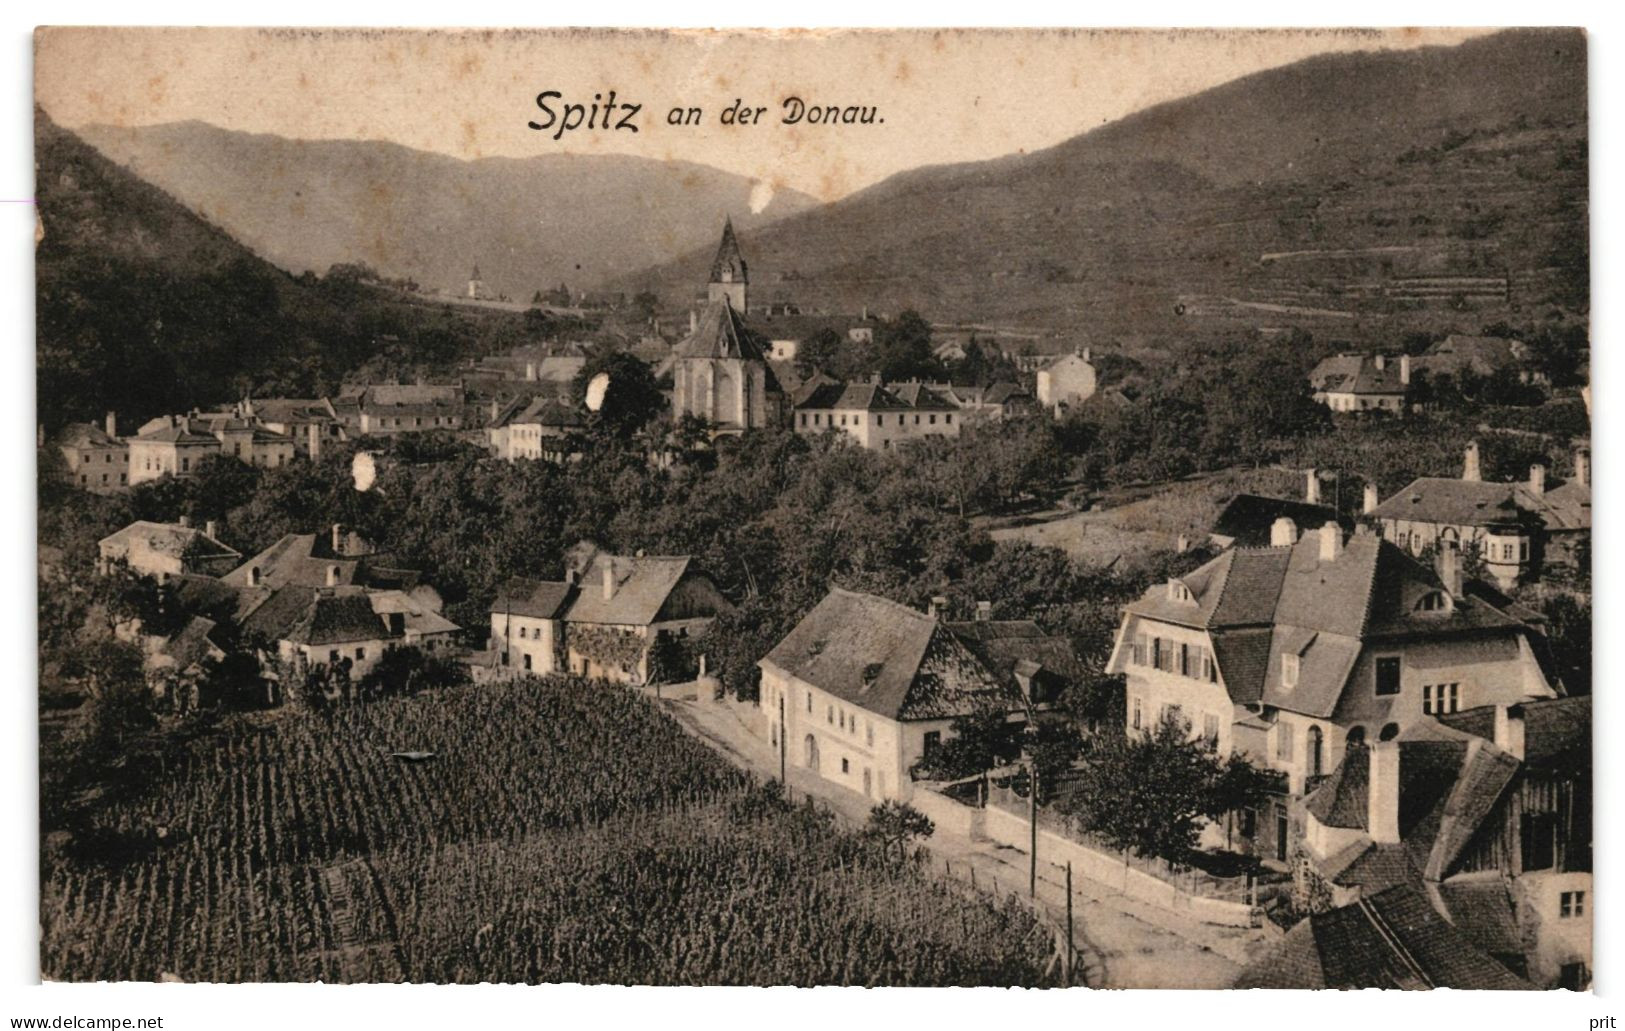 Spitz An Der Donau Wachau Lower-Austria 1912 Unused Postcard. Publisher Phot. U. Verlag Johann Saska, Krems A. D. Donau - Wachau